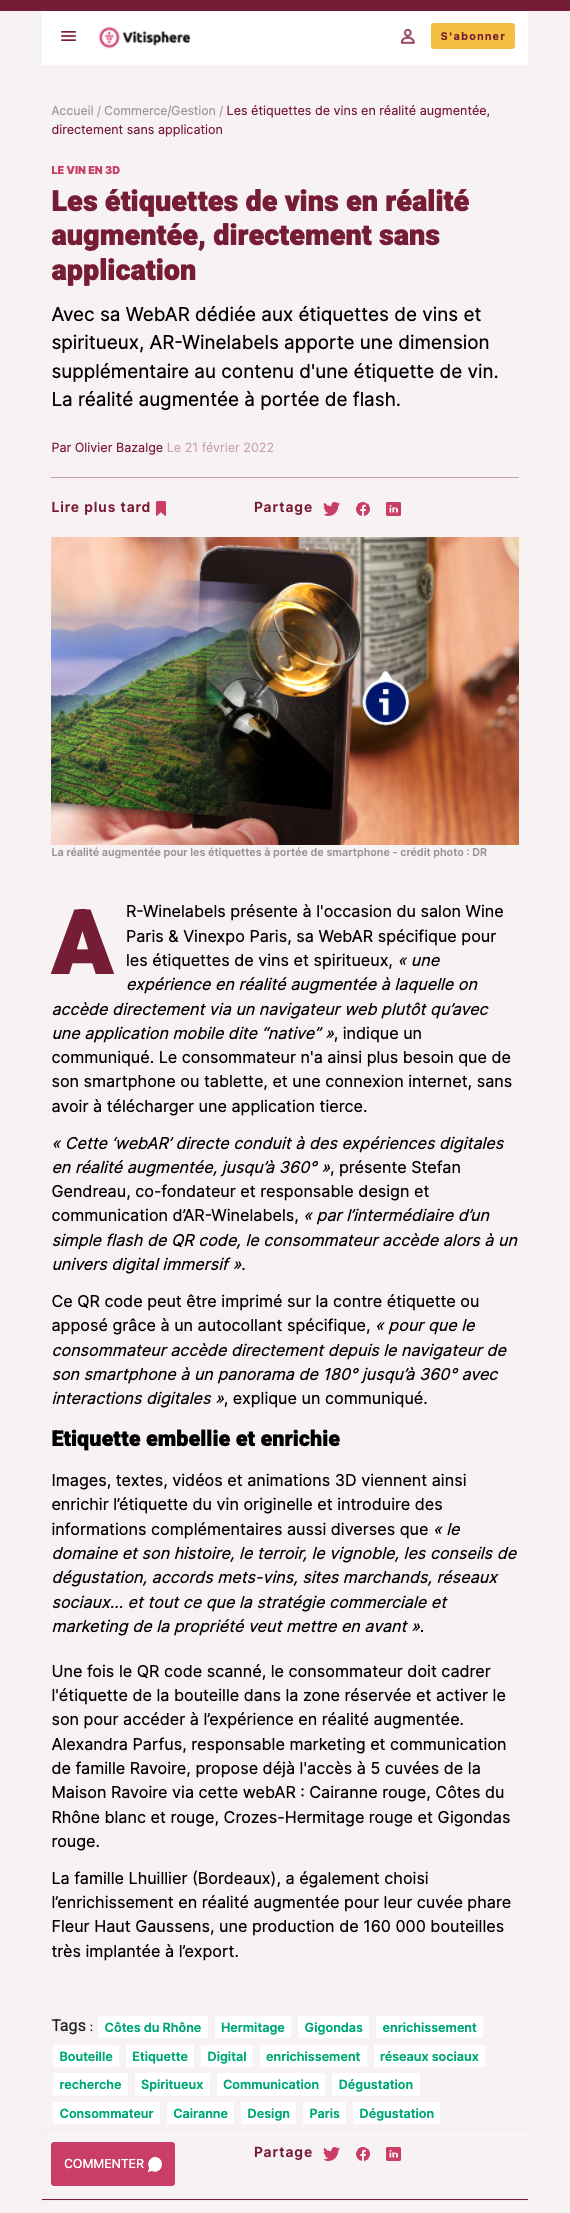 Vitisphère on February 24, 2022, Olivier Bazalge